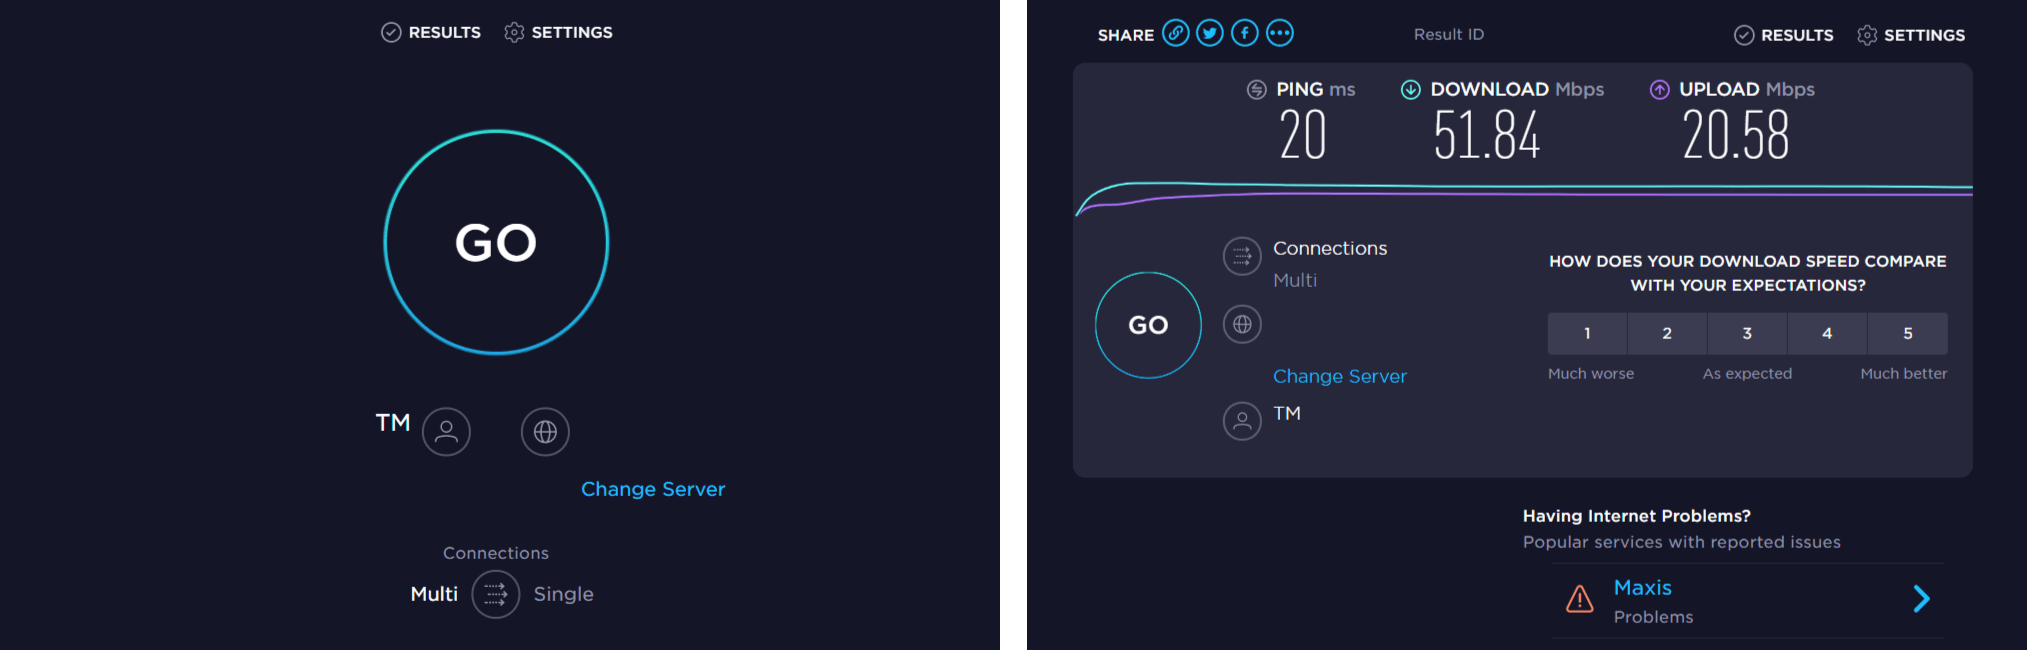 Checking internet speed with Speedtest